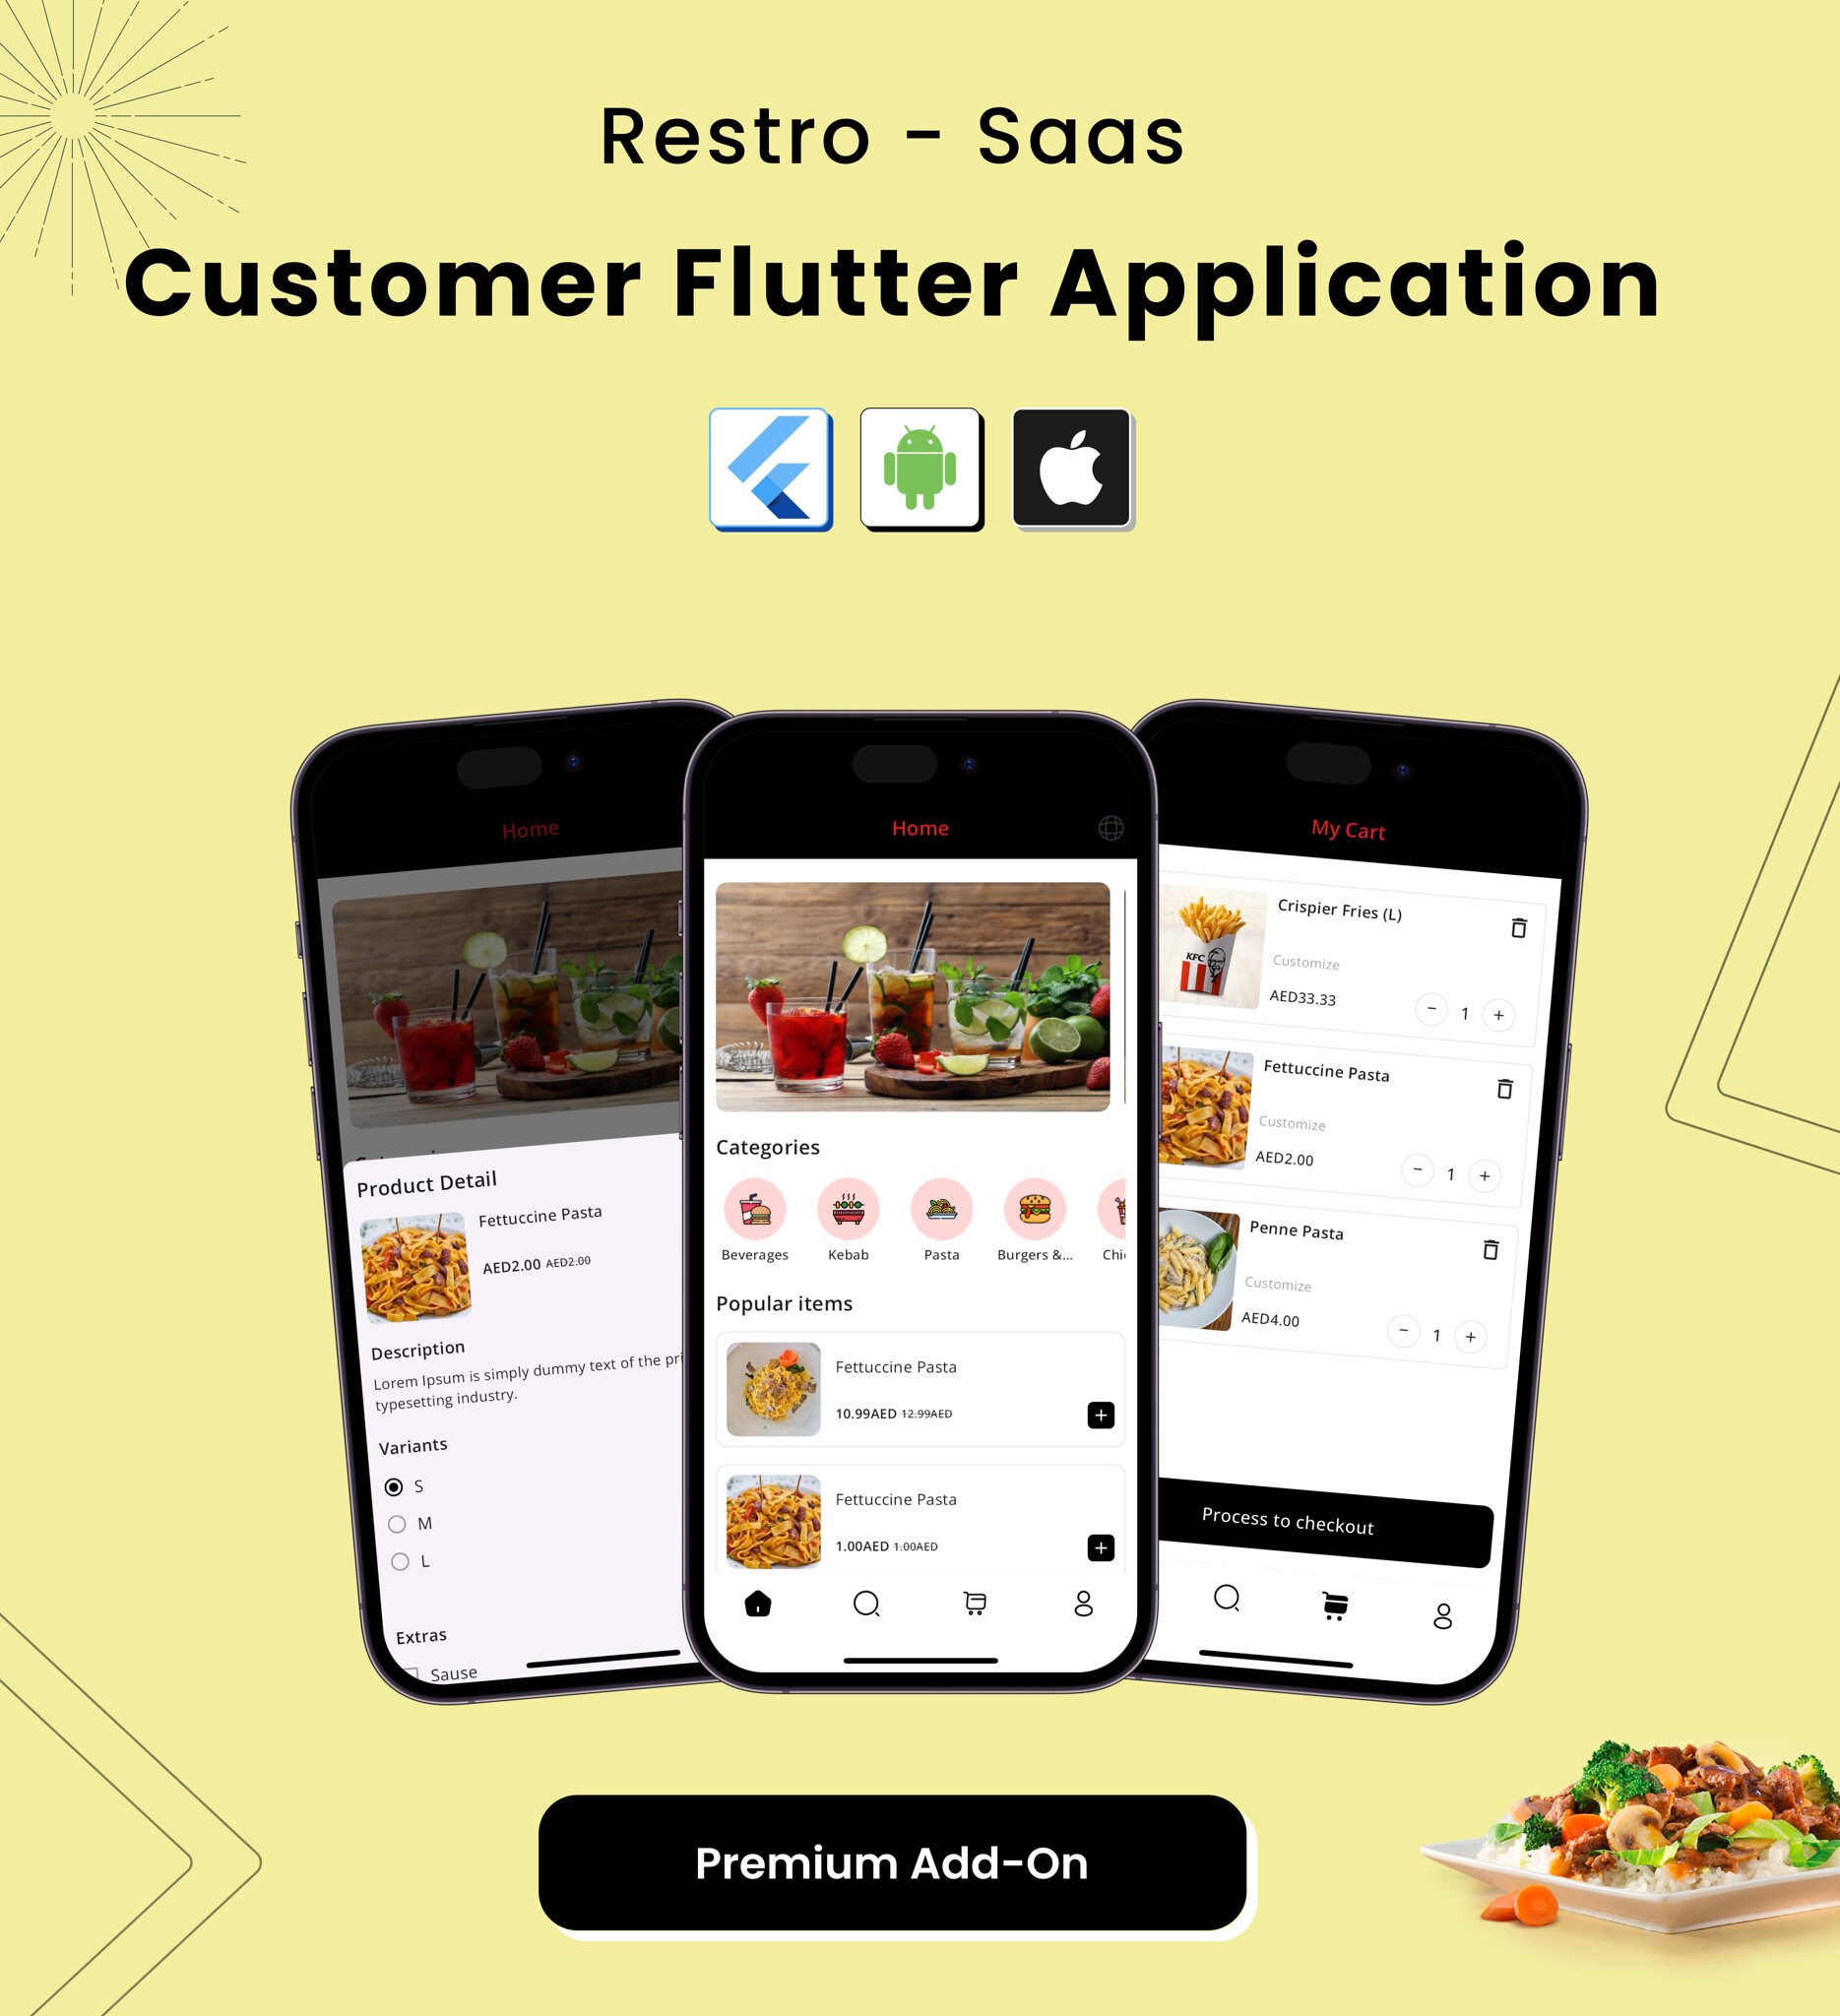 Restro SaaS - Multi Restaurant Online WhatsApp Food Ordering System SaaS